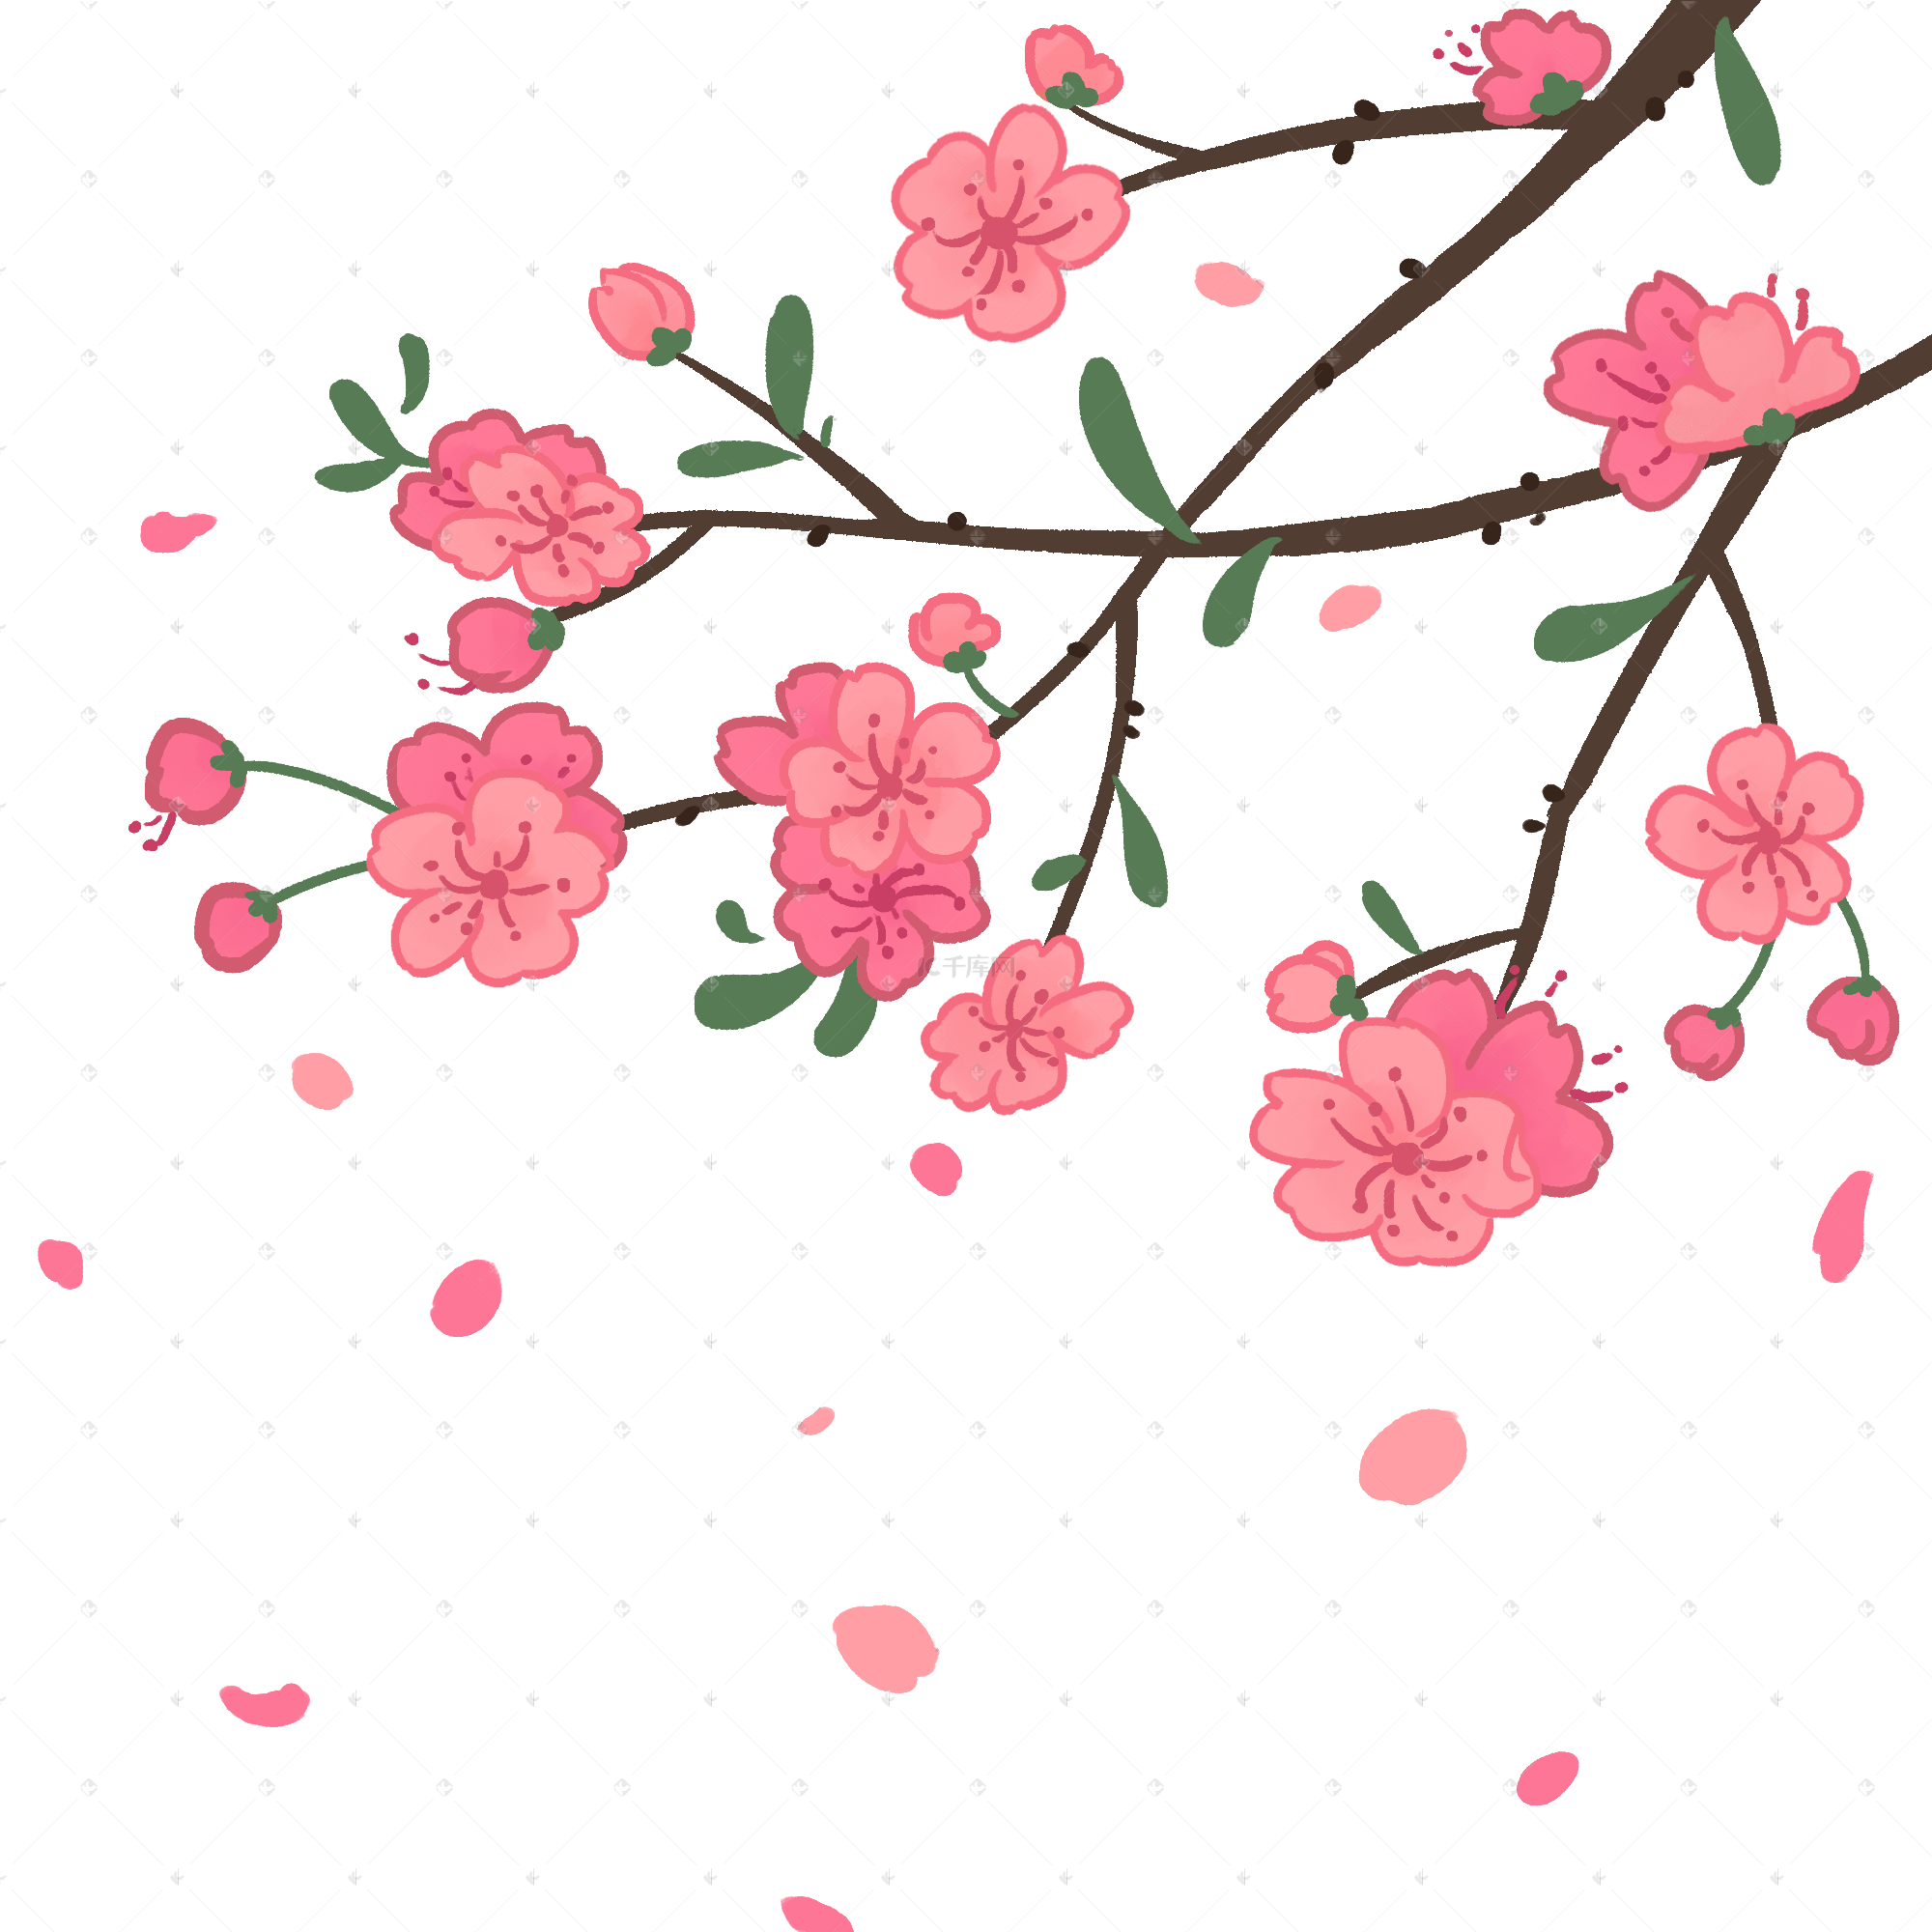 玫瑰花瓣掉在地上高清摄影大图-千库网